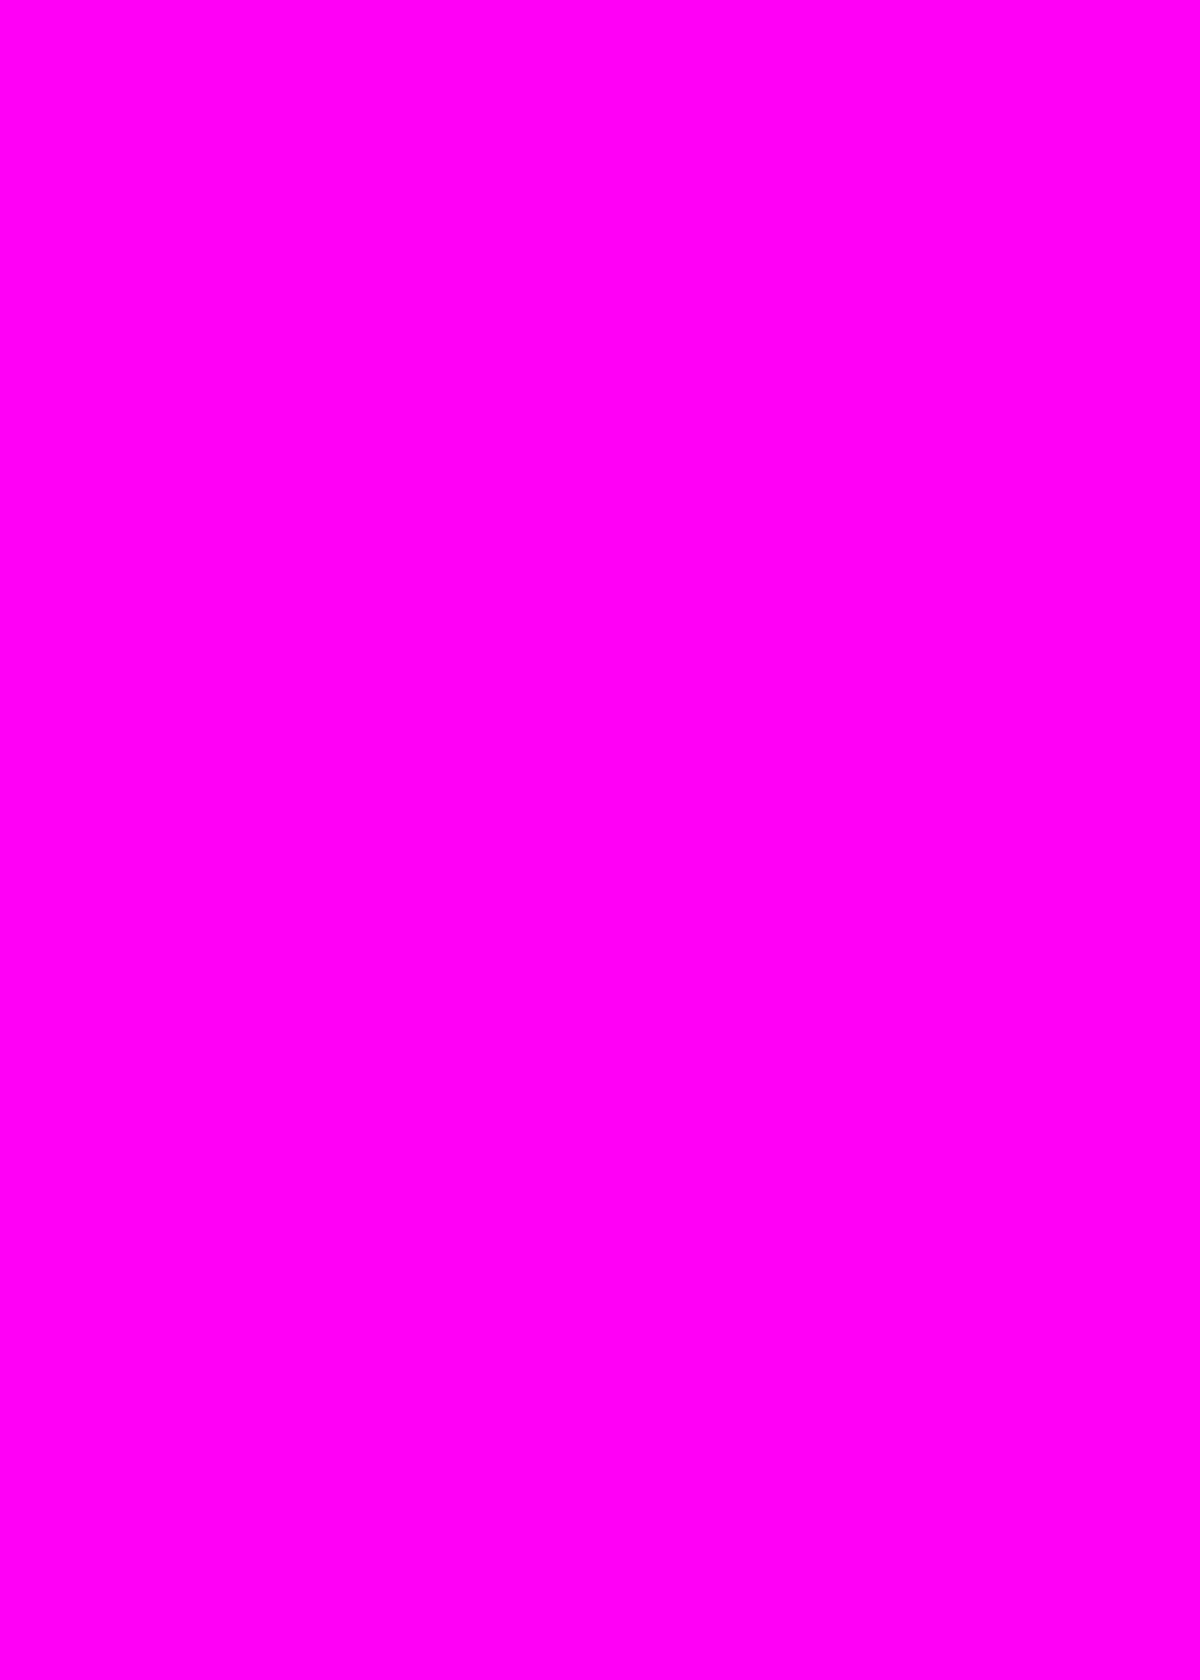 紫红色 紫罗兰色 纯色背景高清壁纸 可设置聊天背景图 微博版图 原创